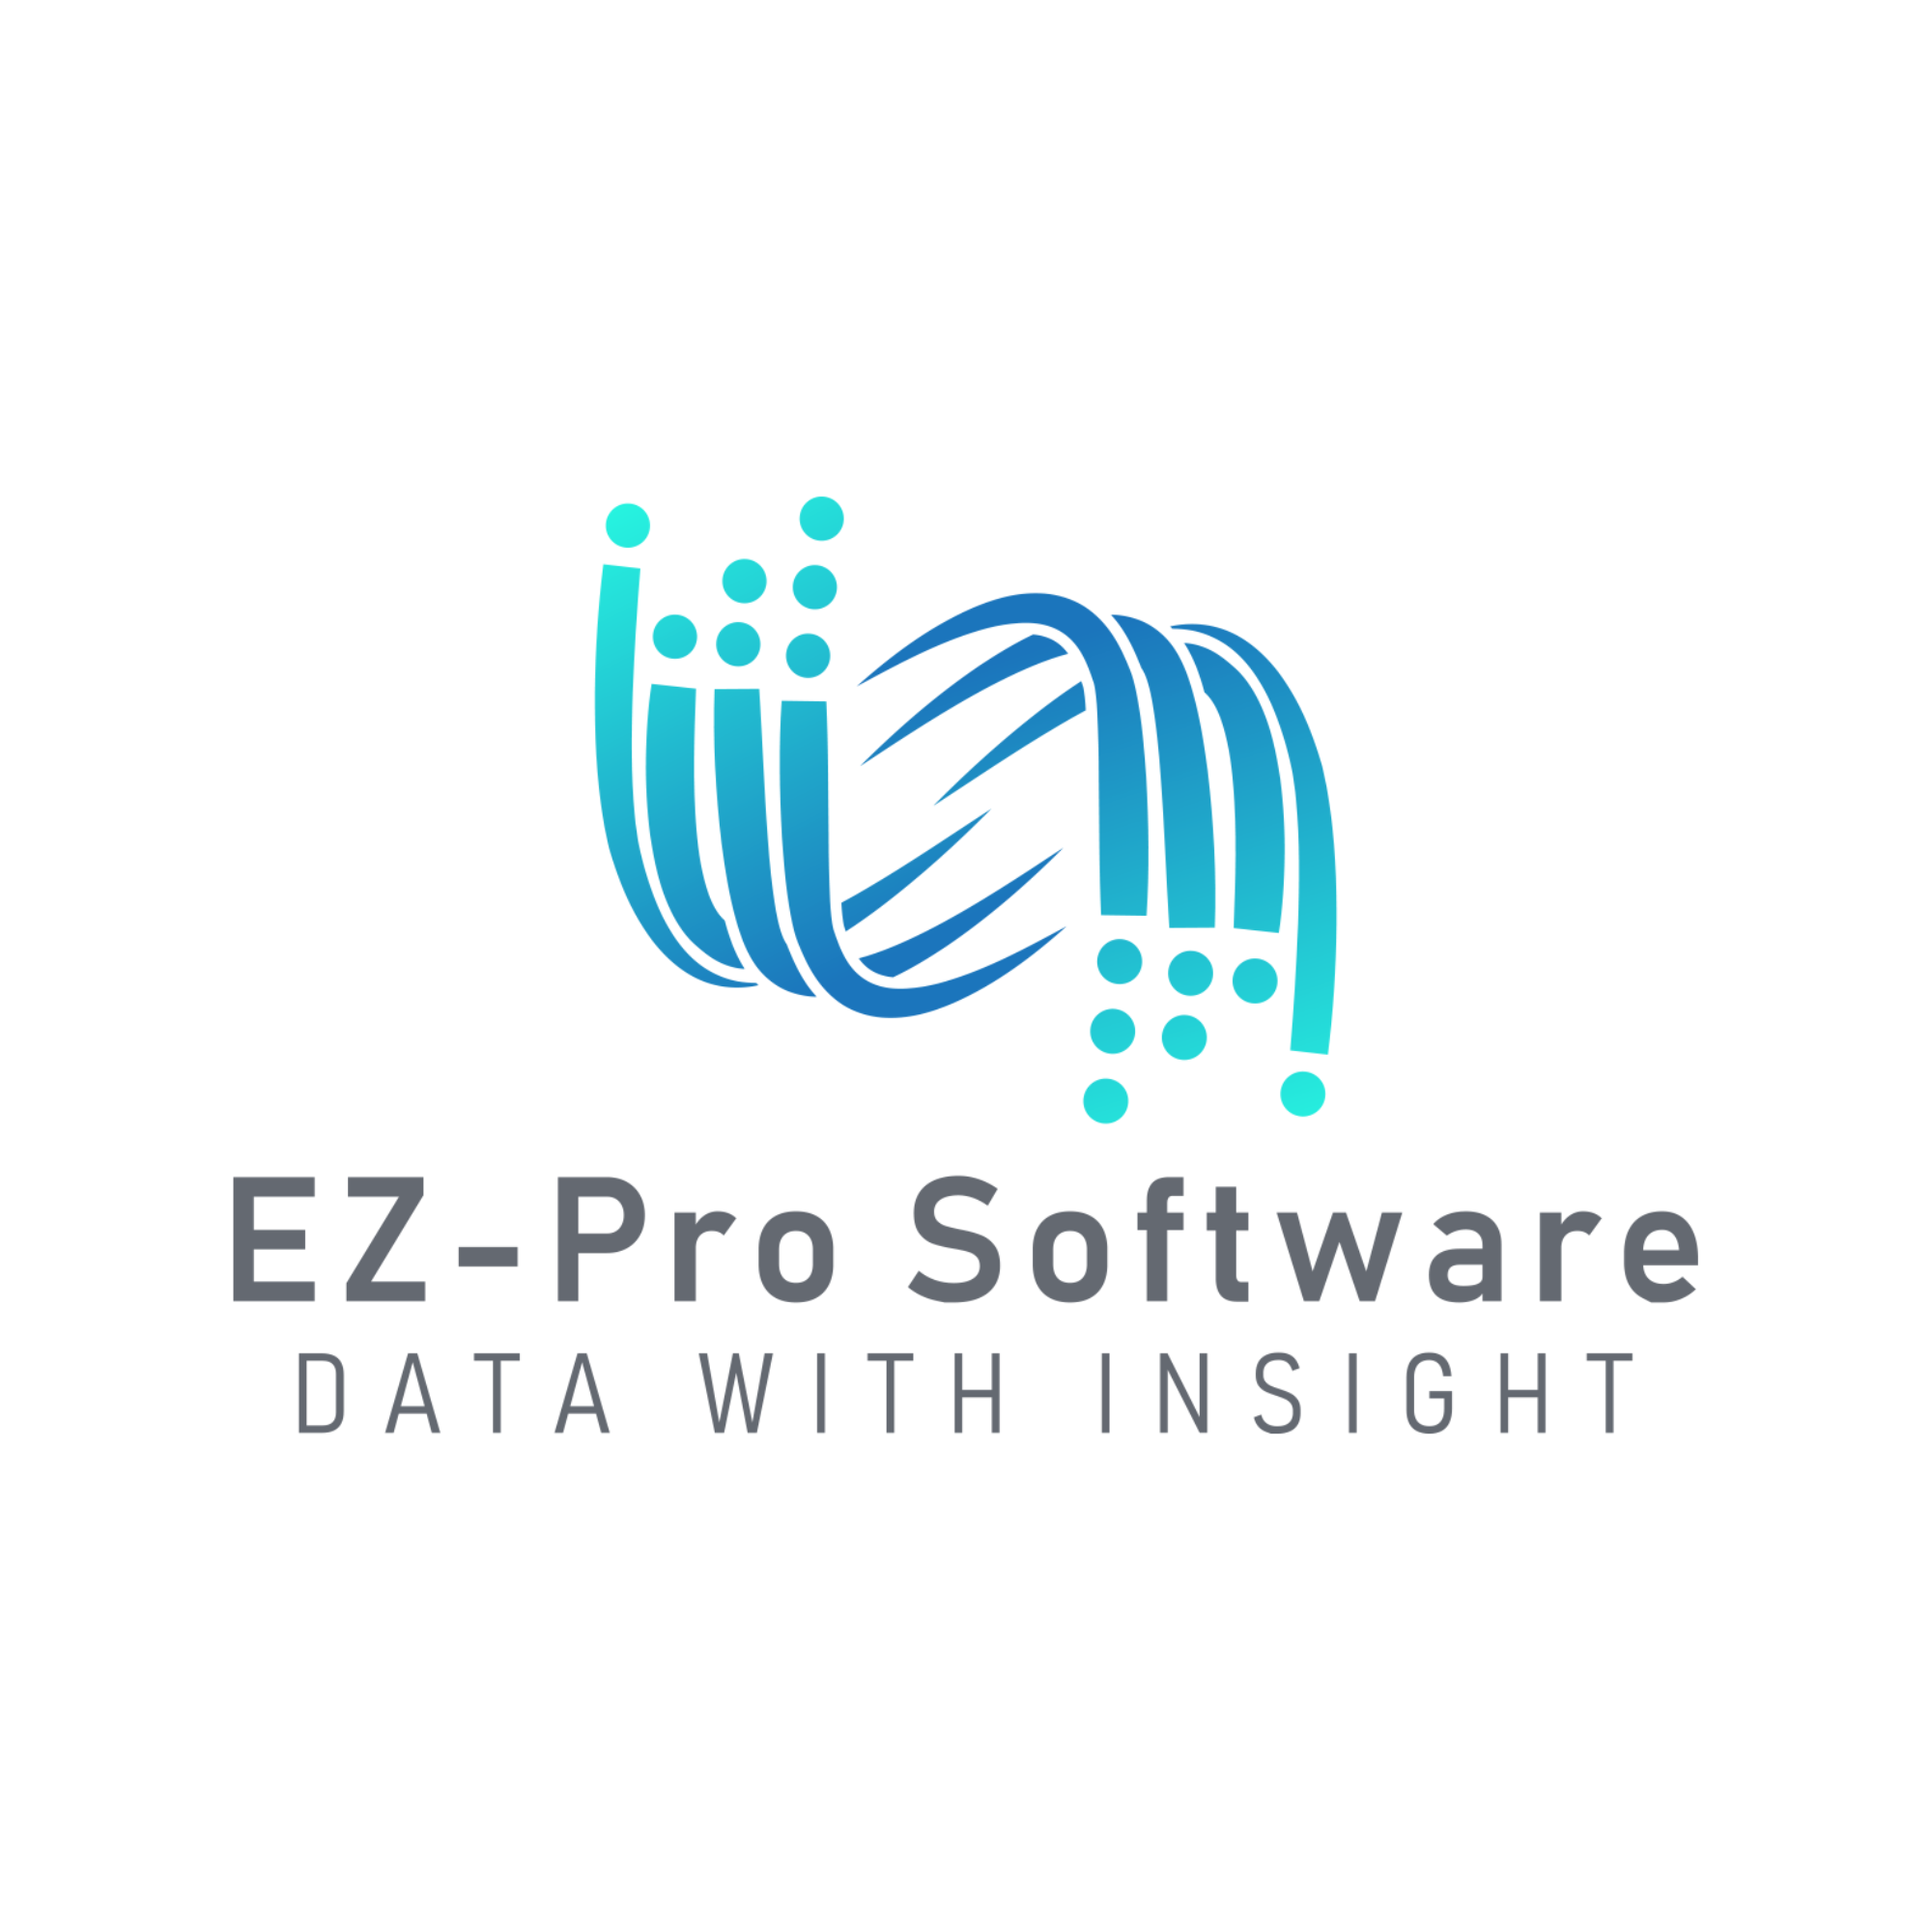 EZ-Pro Software